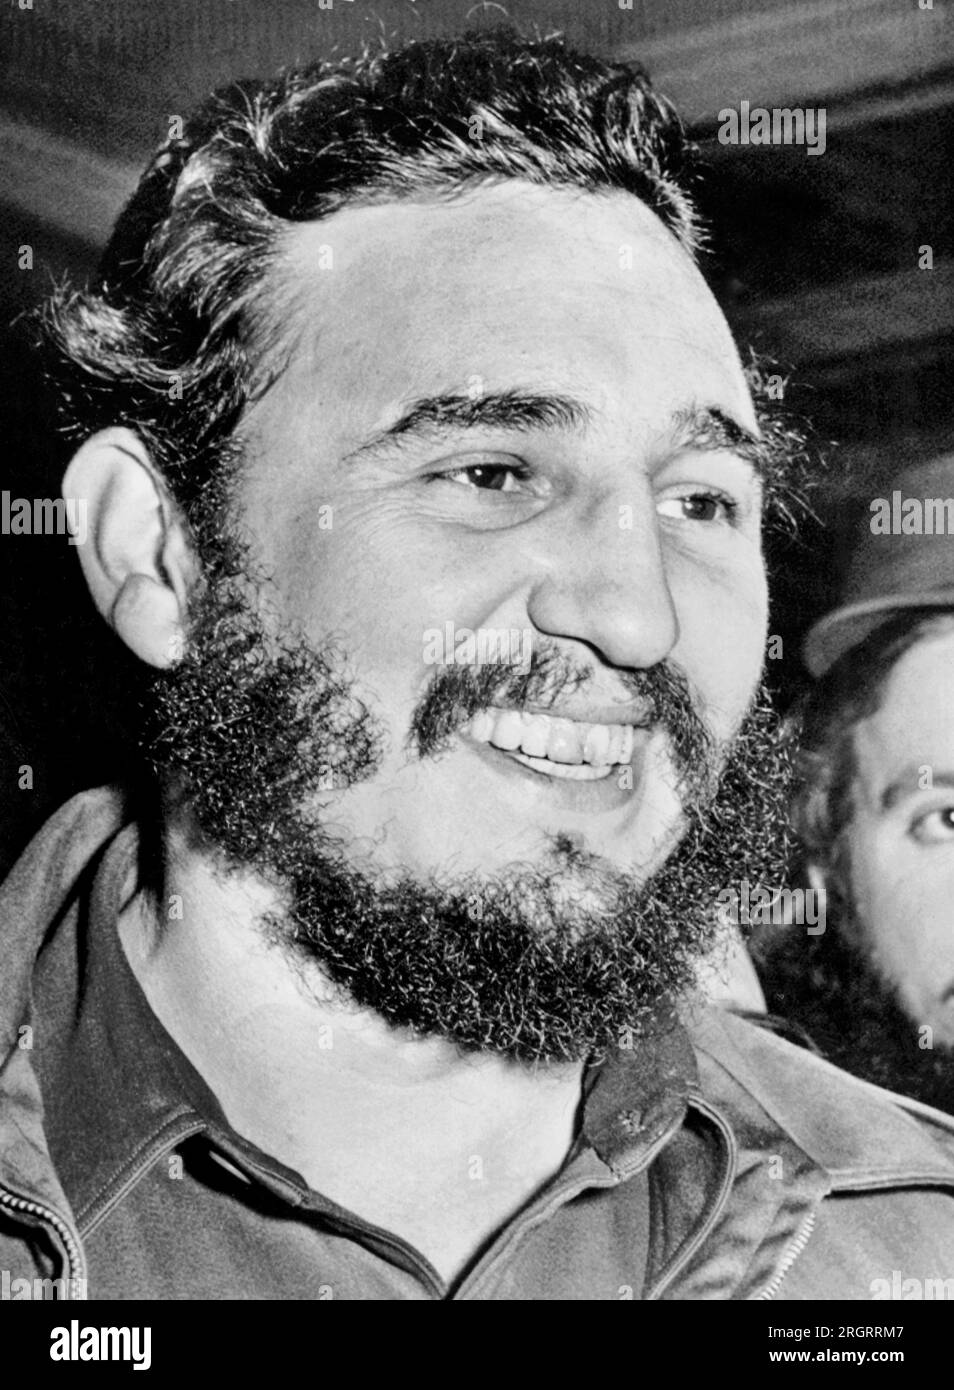 Washington, D.C. : 17 avril 1959 le Premier ministre cubain Fidel Castro est tout sourire alors qu'il entre dans l'ambassade de Cuba après un accueil enthousiaste d'une petite foule à l'aéroport de D.C. Banque D'Images